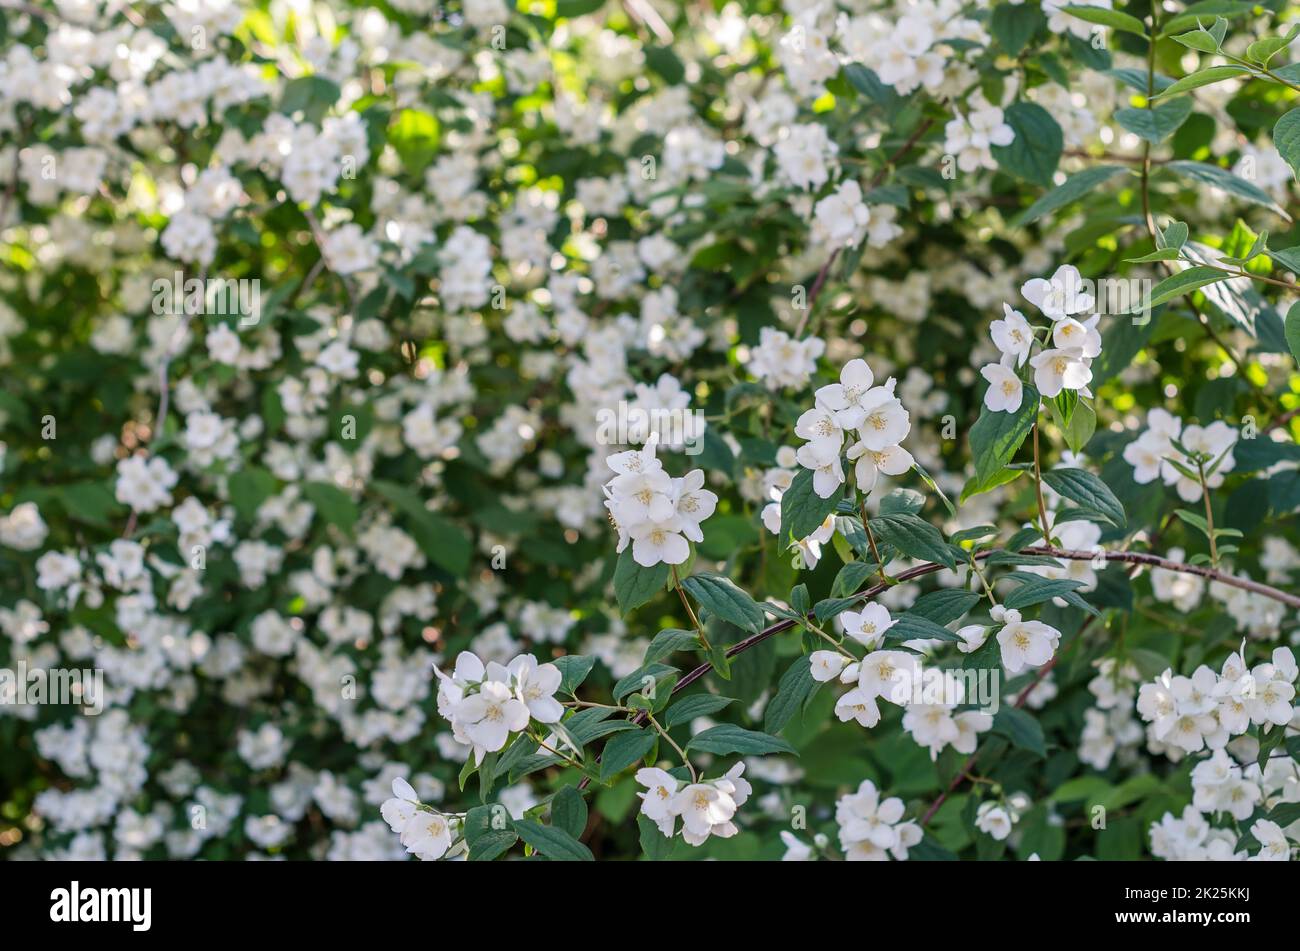 Fragrant white flowers in blossom, summer landscape Stock Photo